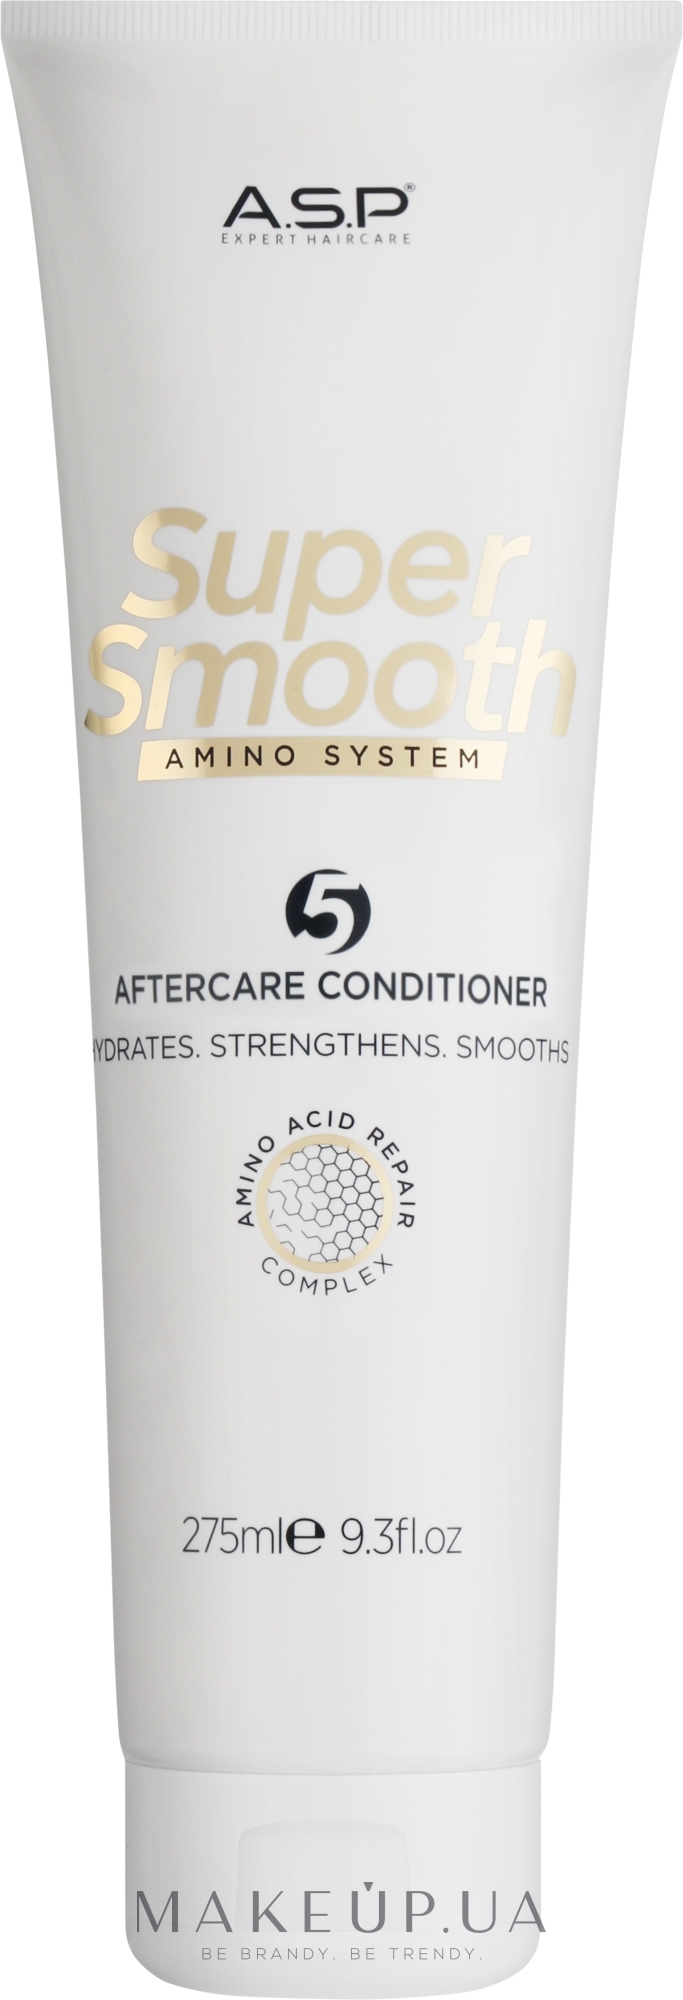 Восстанавливающий кондиционер для волос - ASP Super Smooth Amino System After Care Conditioner — фото 275ml